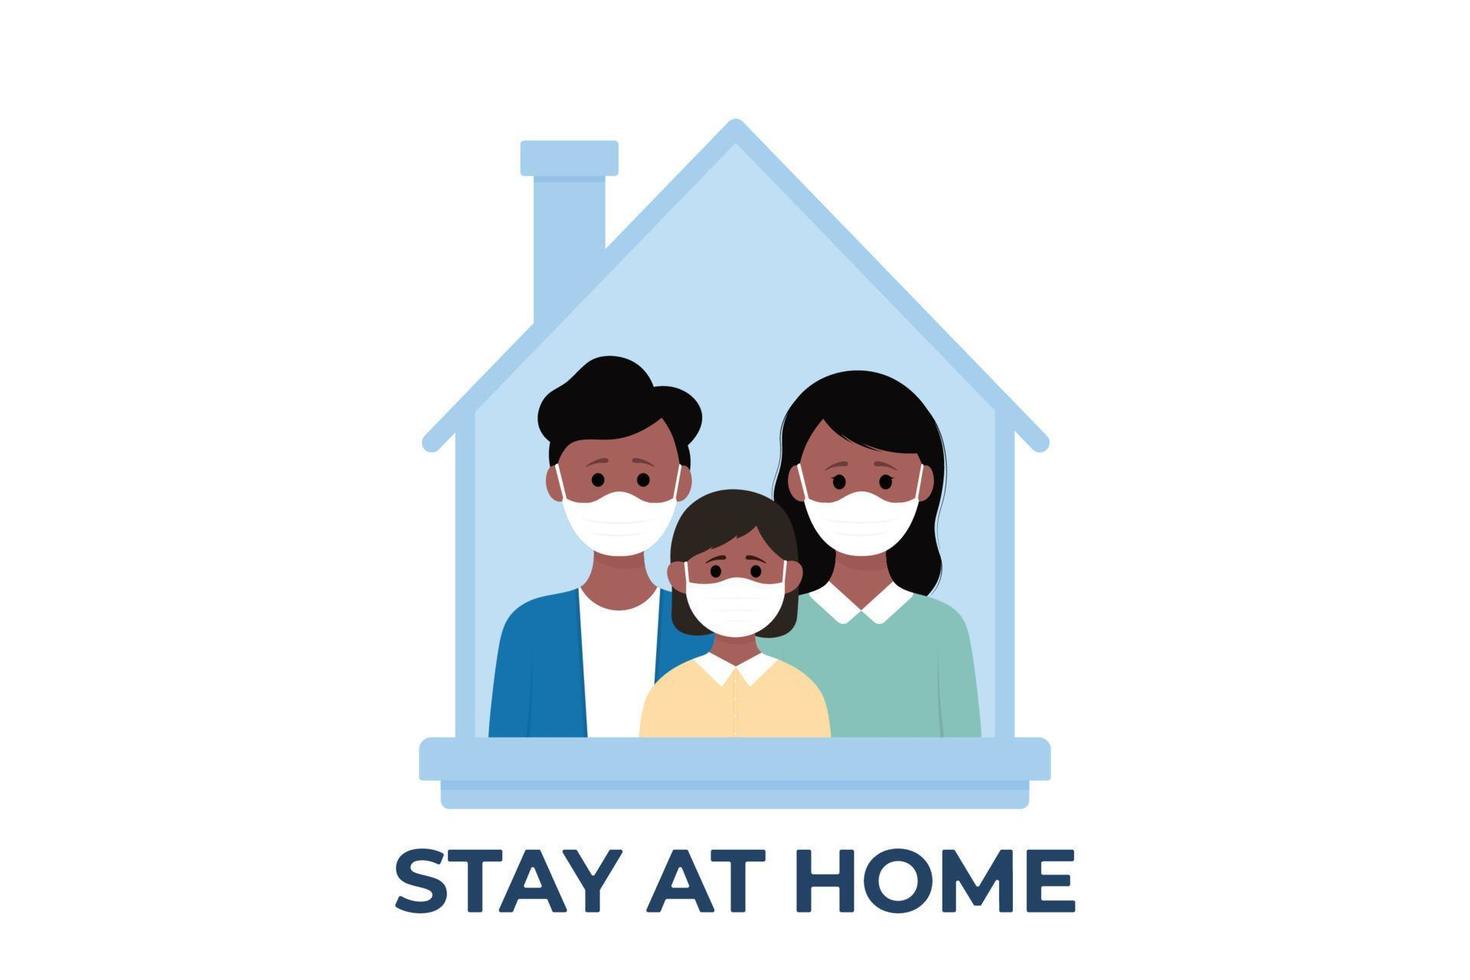 unga föräldrar och barn stannar hemma för att förhindra coronavirus. vektor illustration i platt stil